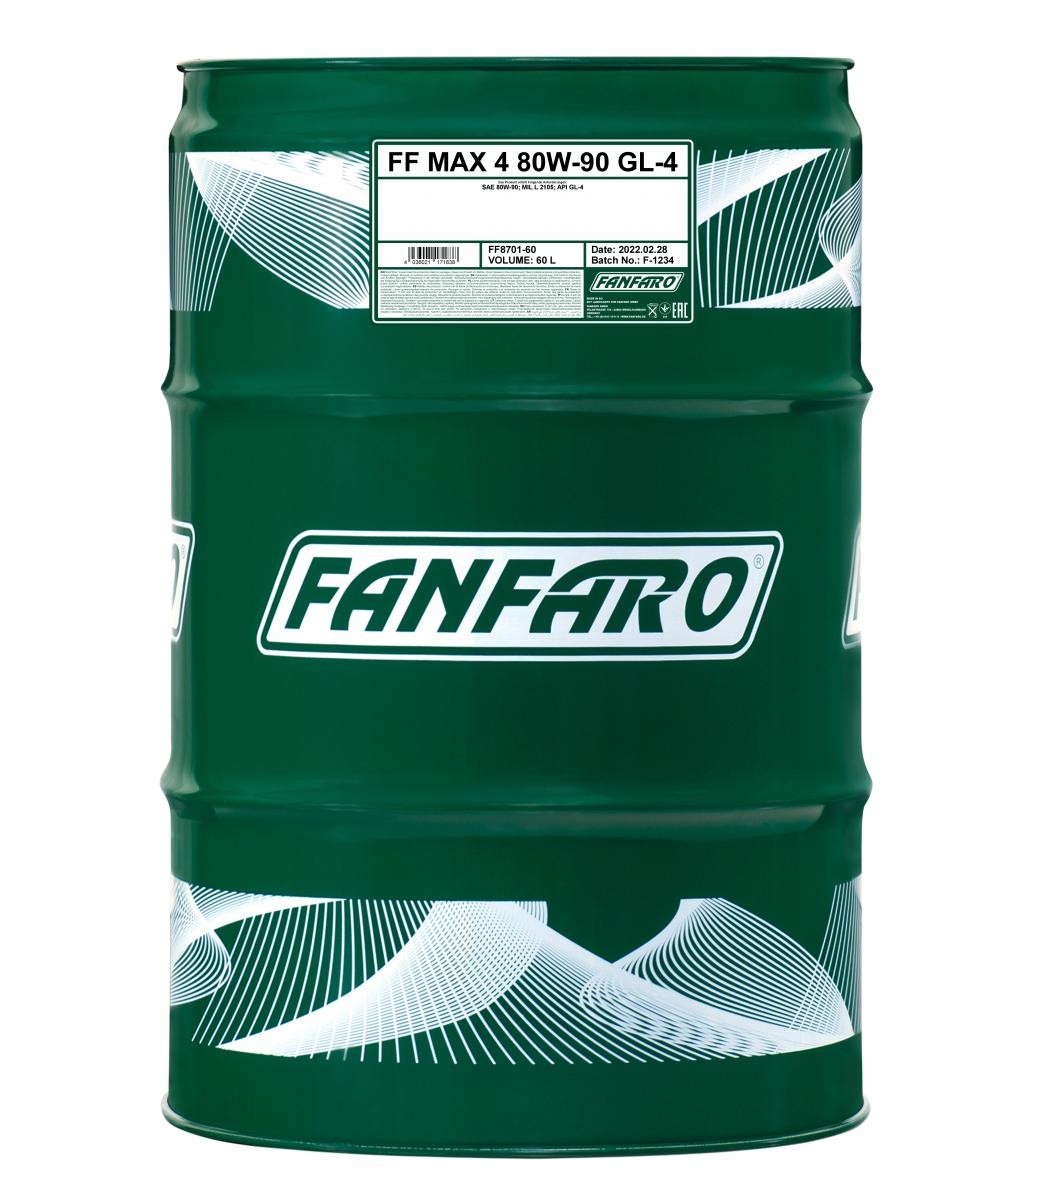 FANFARO MAX 4 80W-90, Inhoud: 60L MIL-L 2105 Versnellingsbakolie FF8701-60 kopen